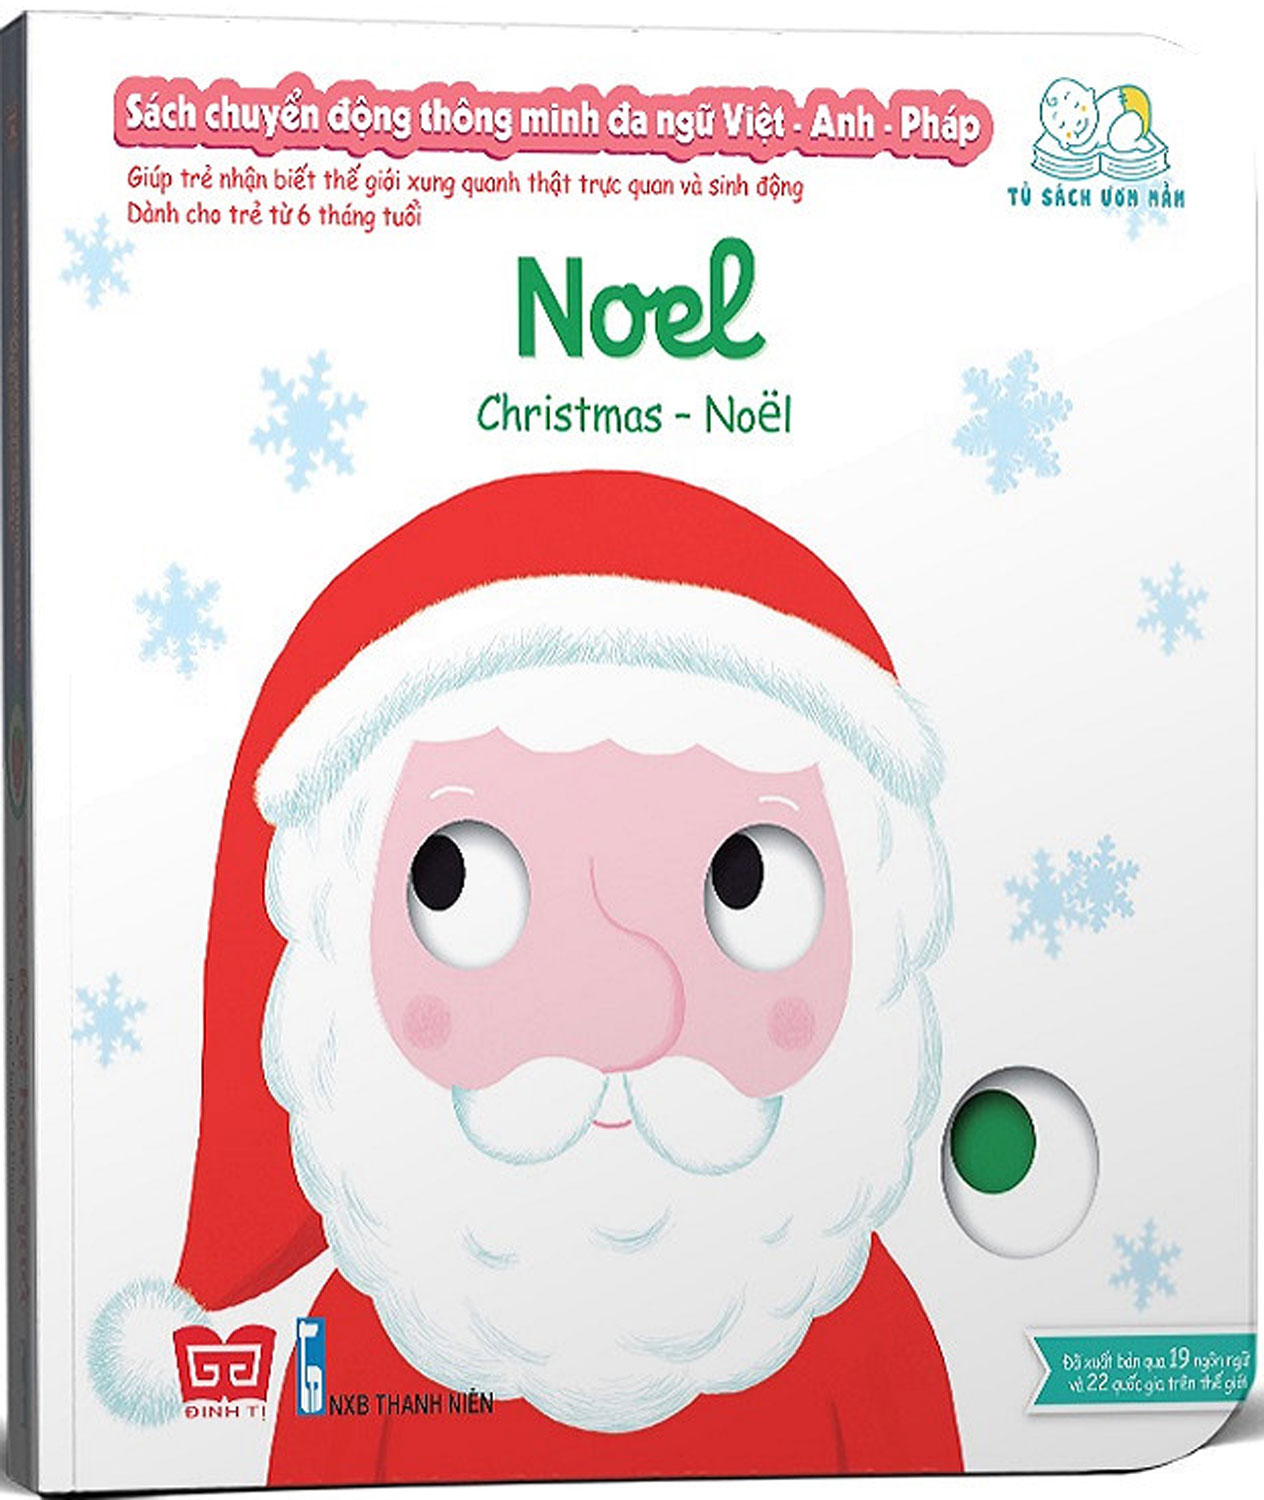 Sách Chuyển Động Thông Minh Đa Ngữ Việt - Anh - Pháp: Noel - Christmas - Noël